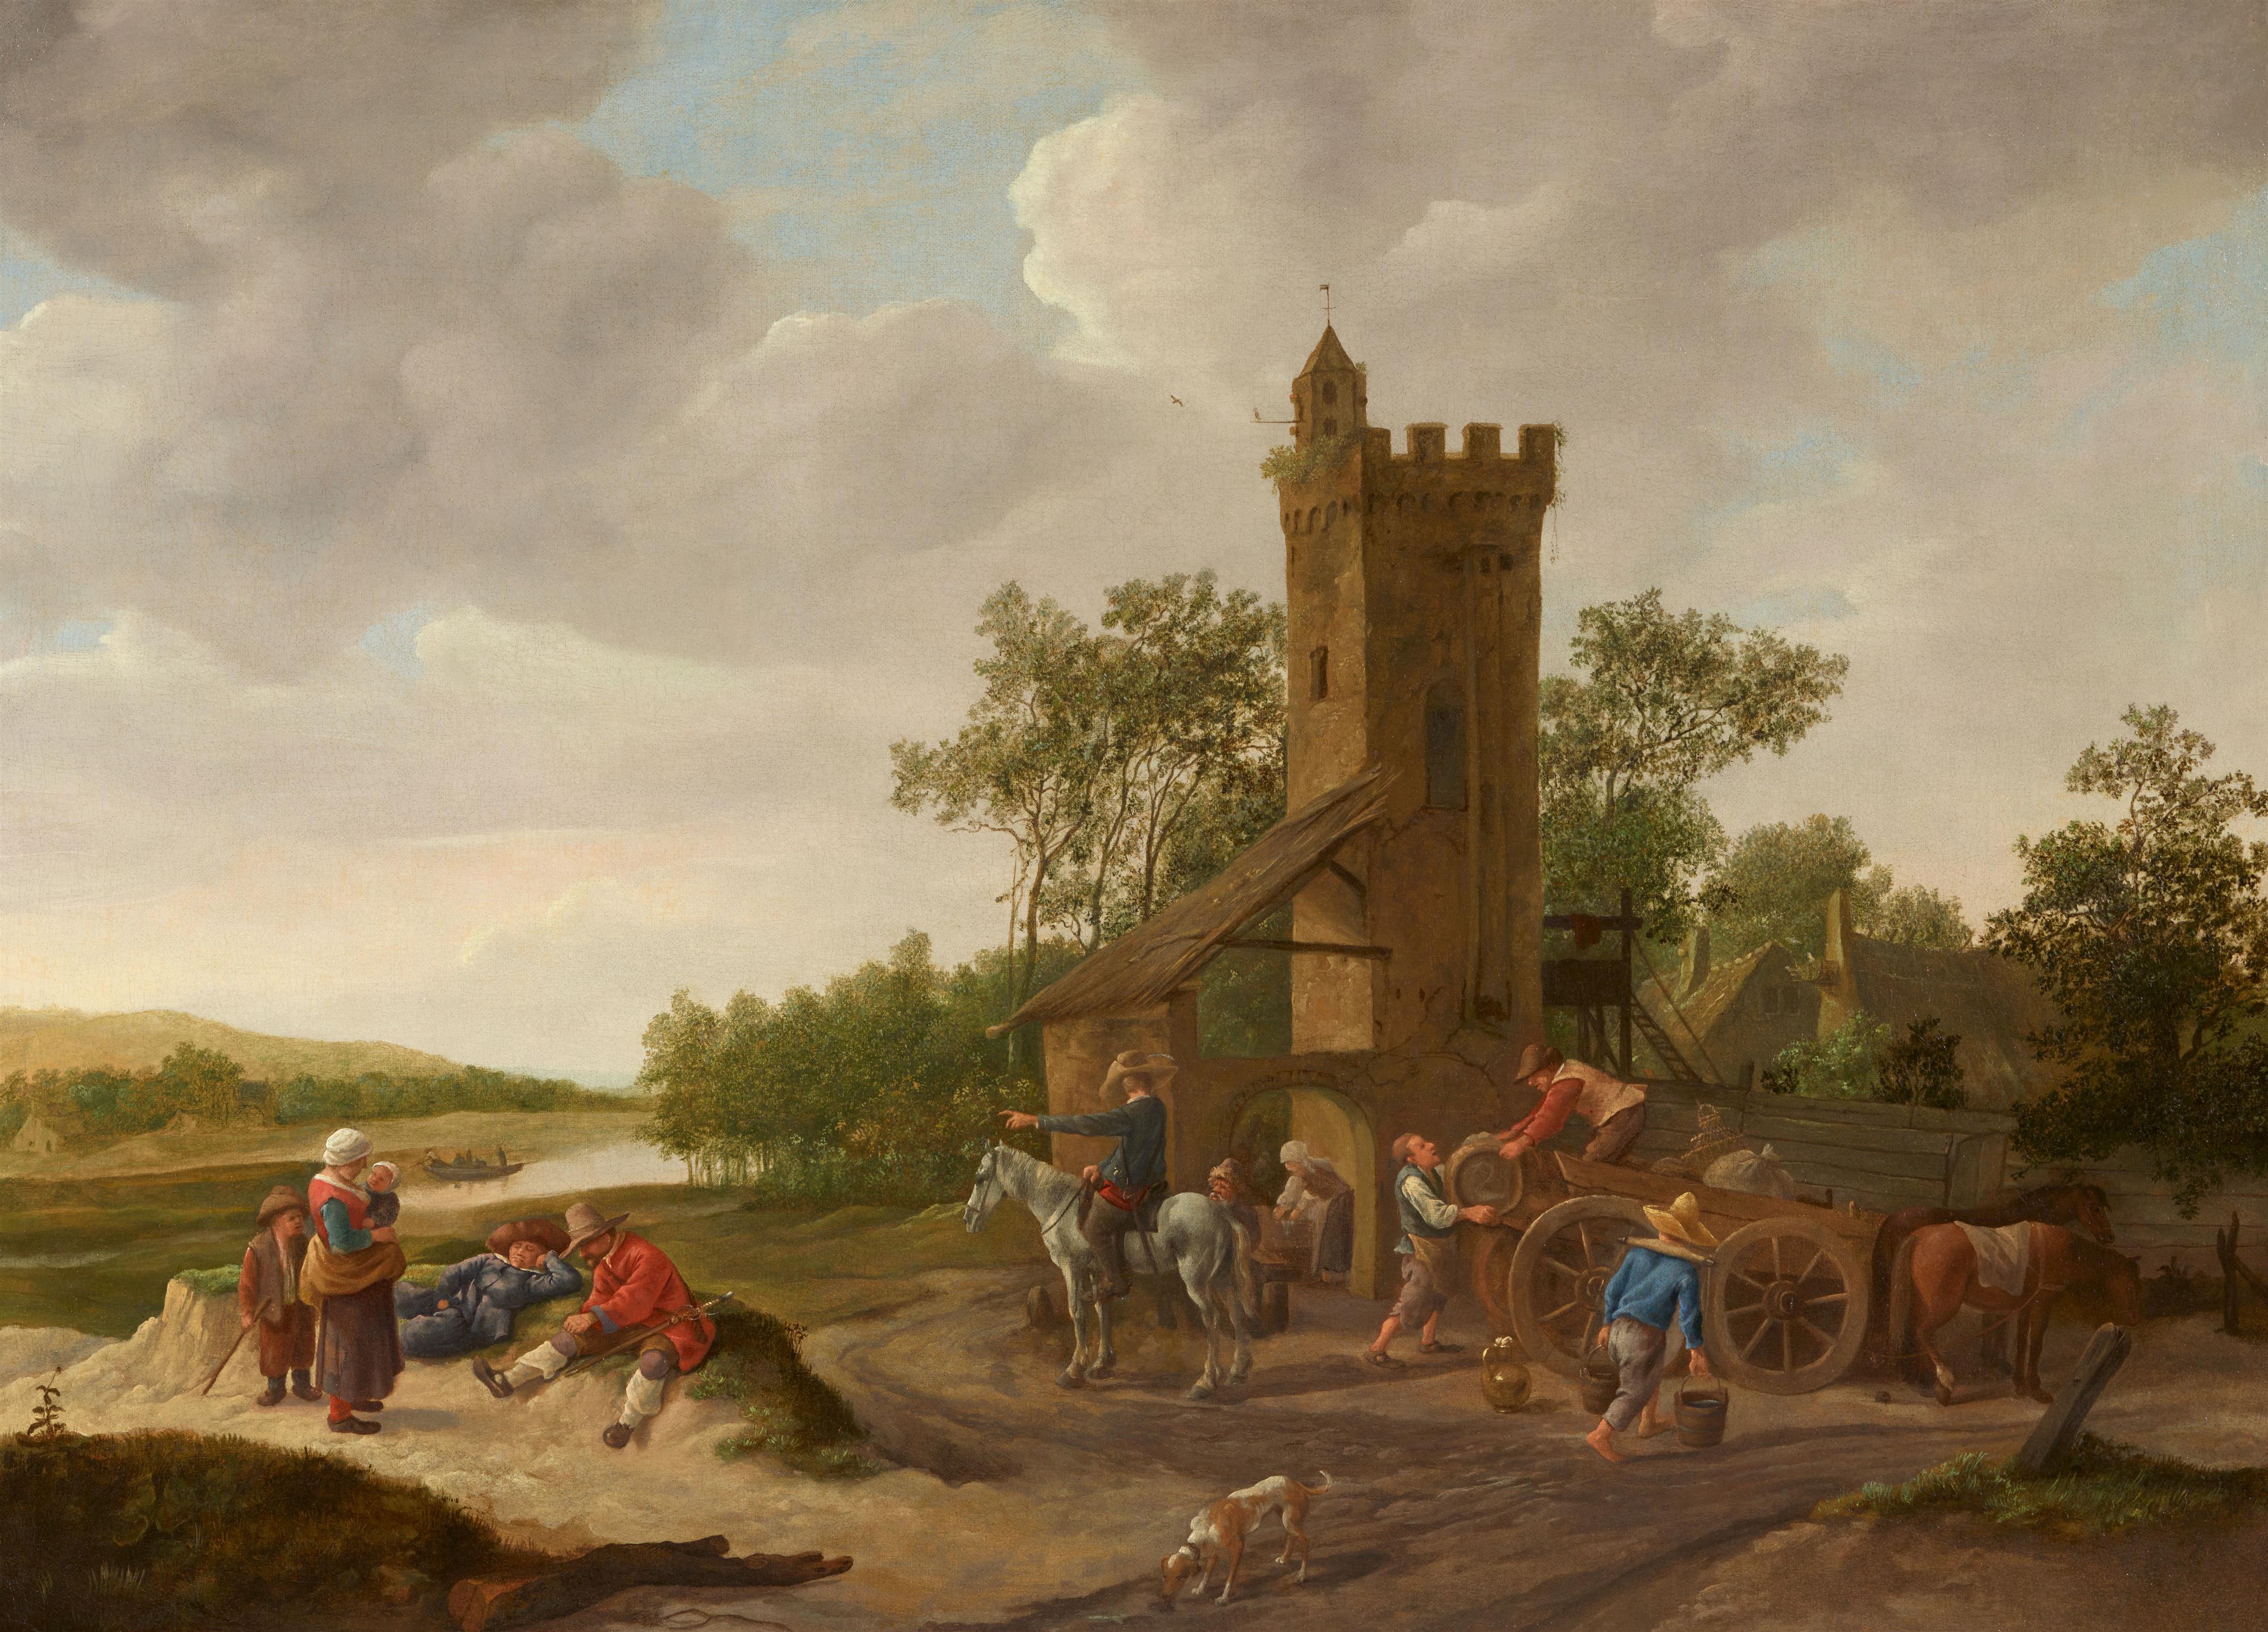 Jan Steen - Landschaft an einem Fluss und mit einem Turm, davor be- oder entladen Männer einen Karren sowie weitere Figuren, darunter ein Reiter, eine Mutter mit Kindern und zwei rastende Männer - image-1